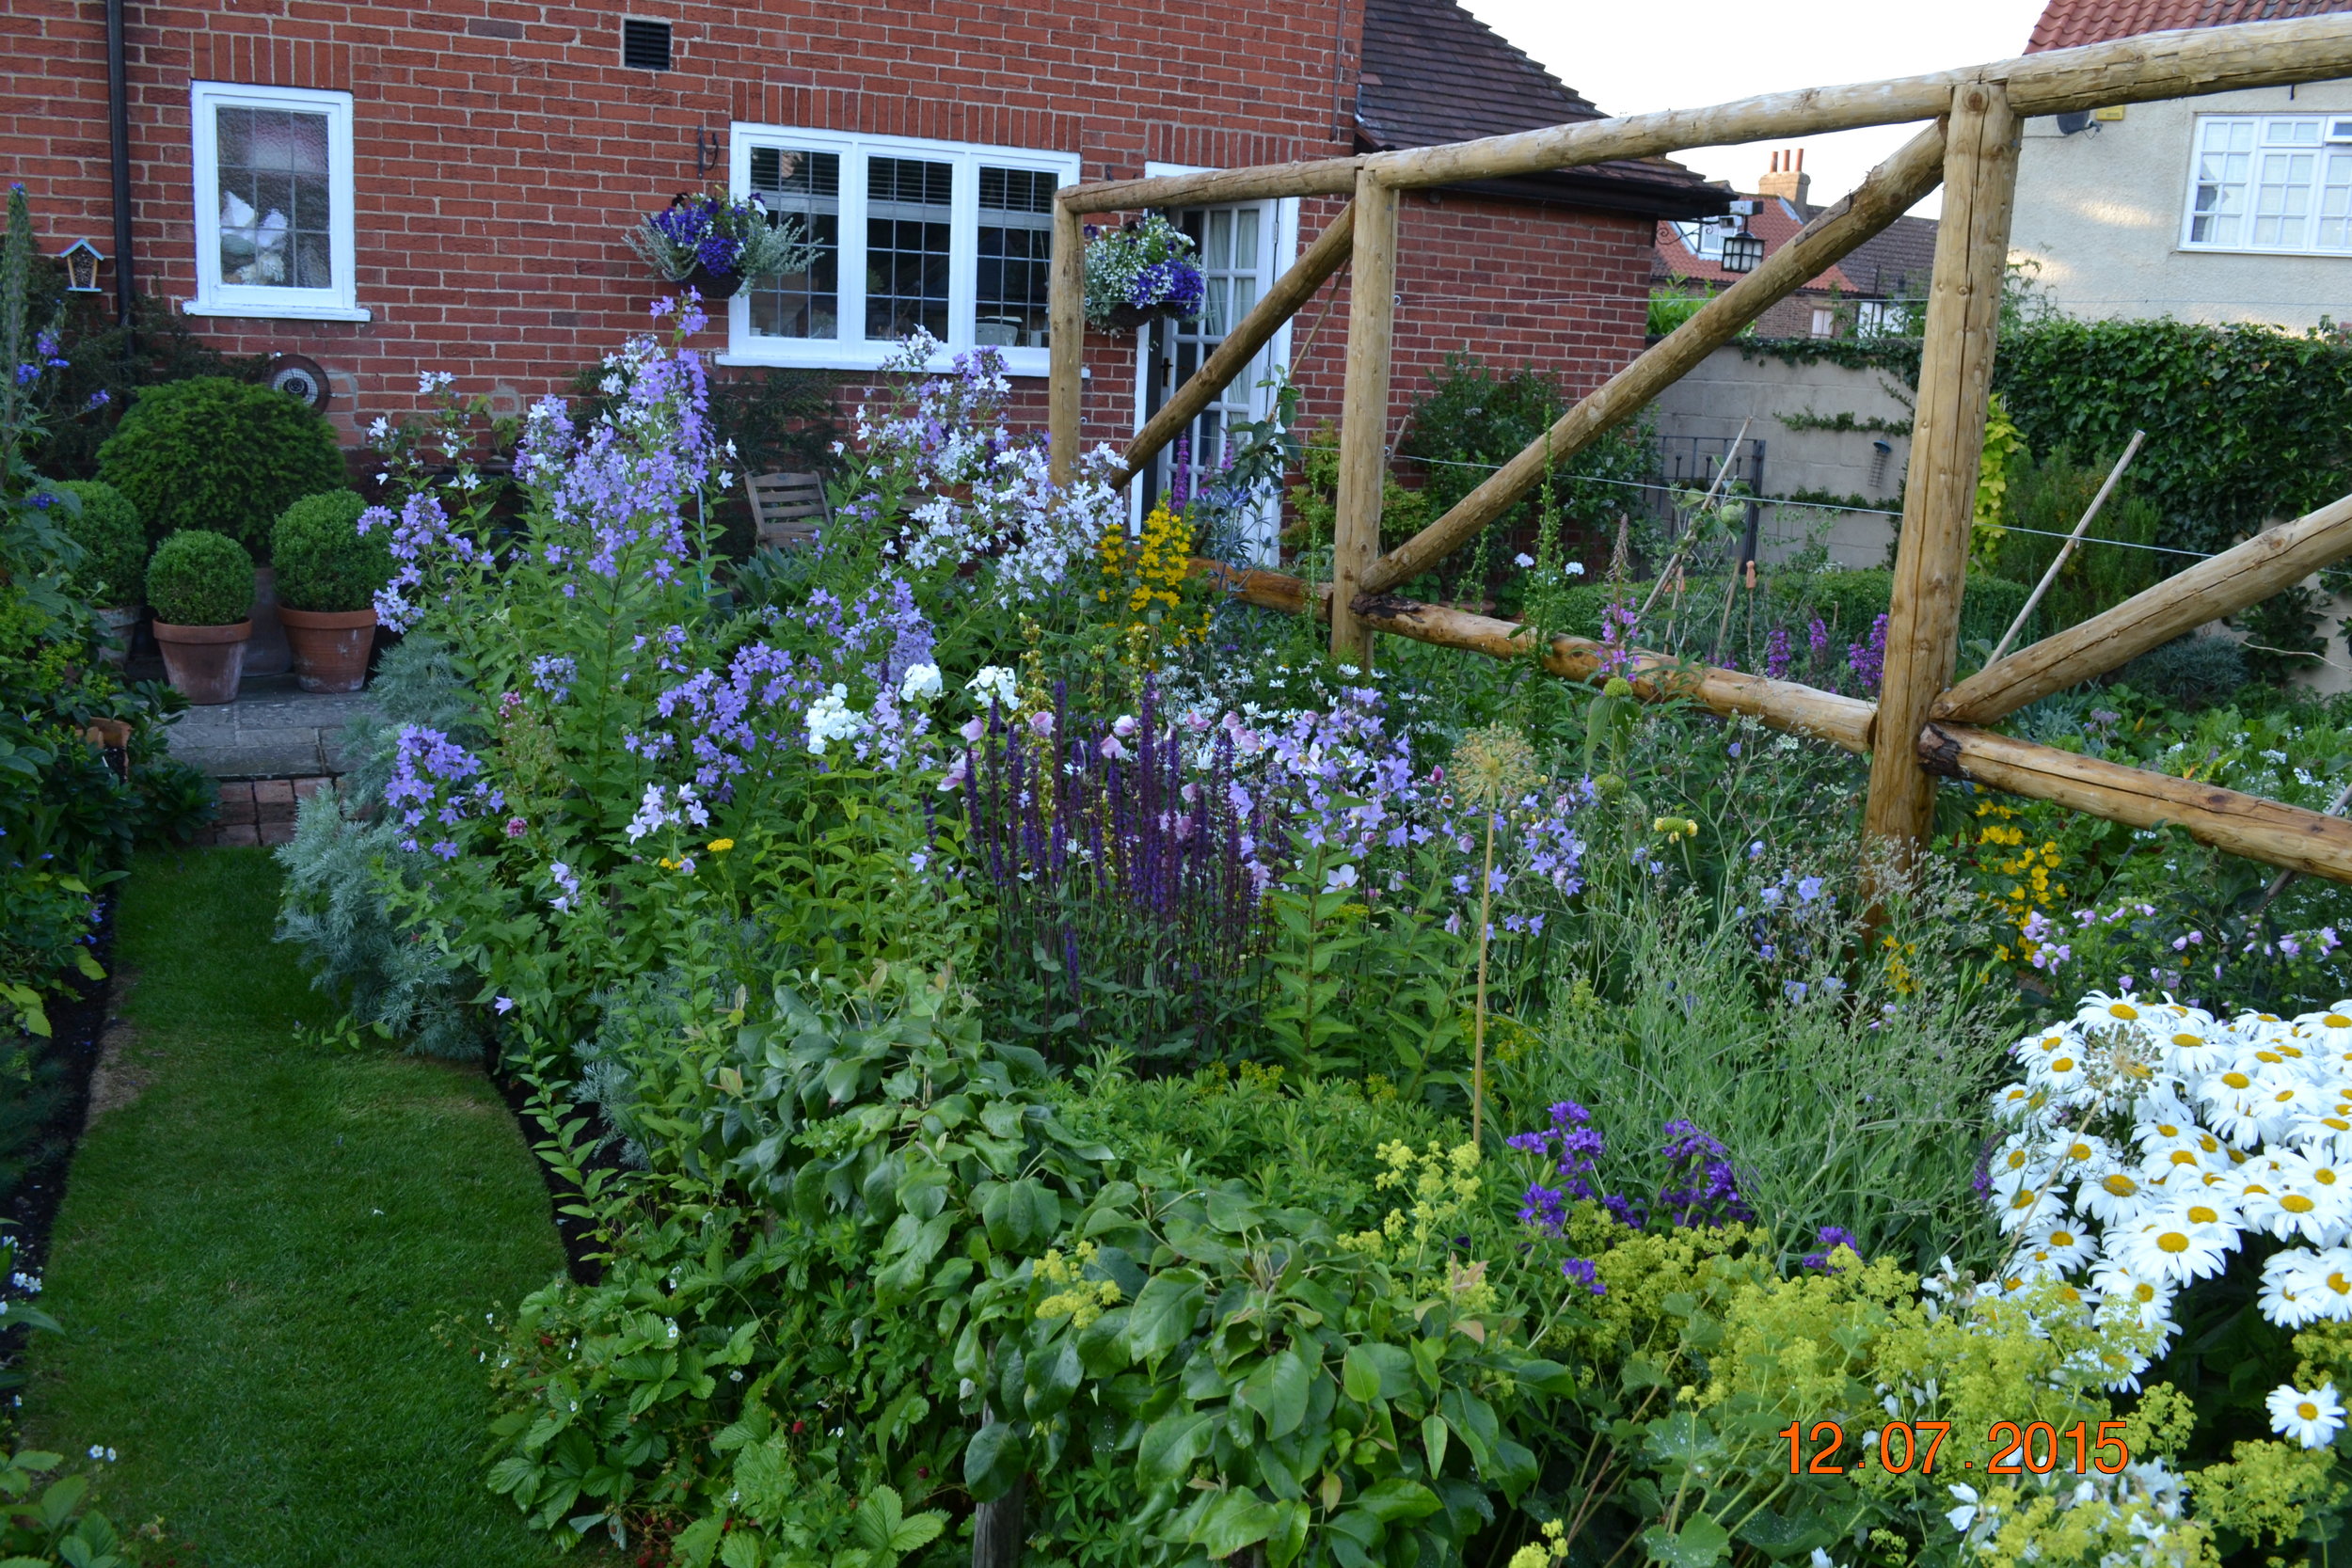 Wales 2015 garden summer flower arranging at home 018.JPG